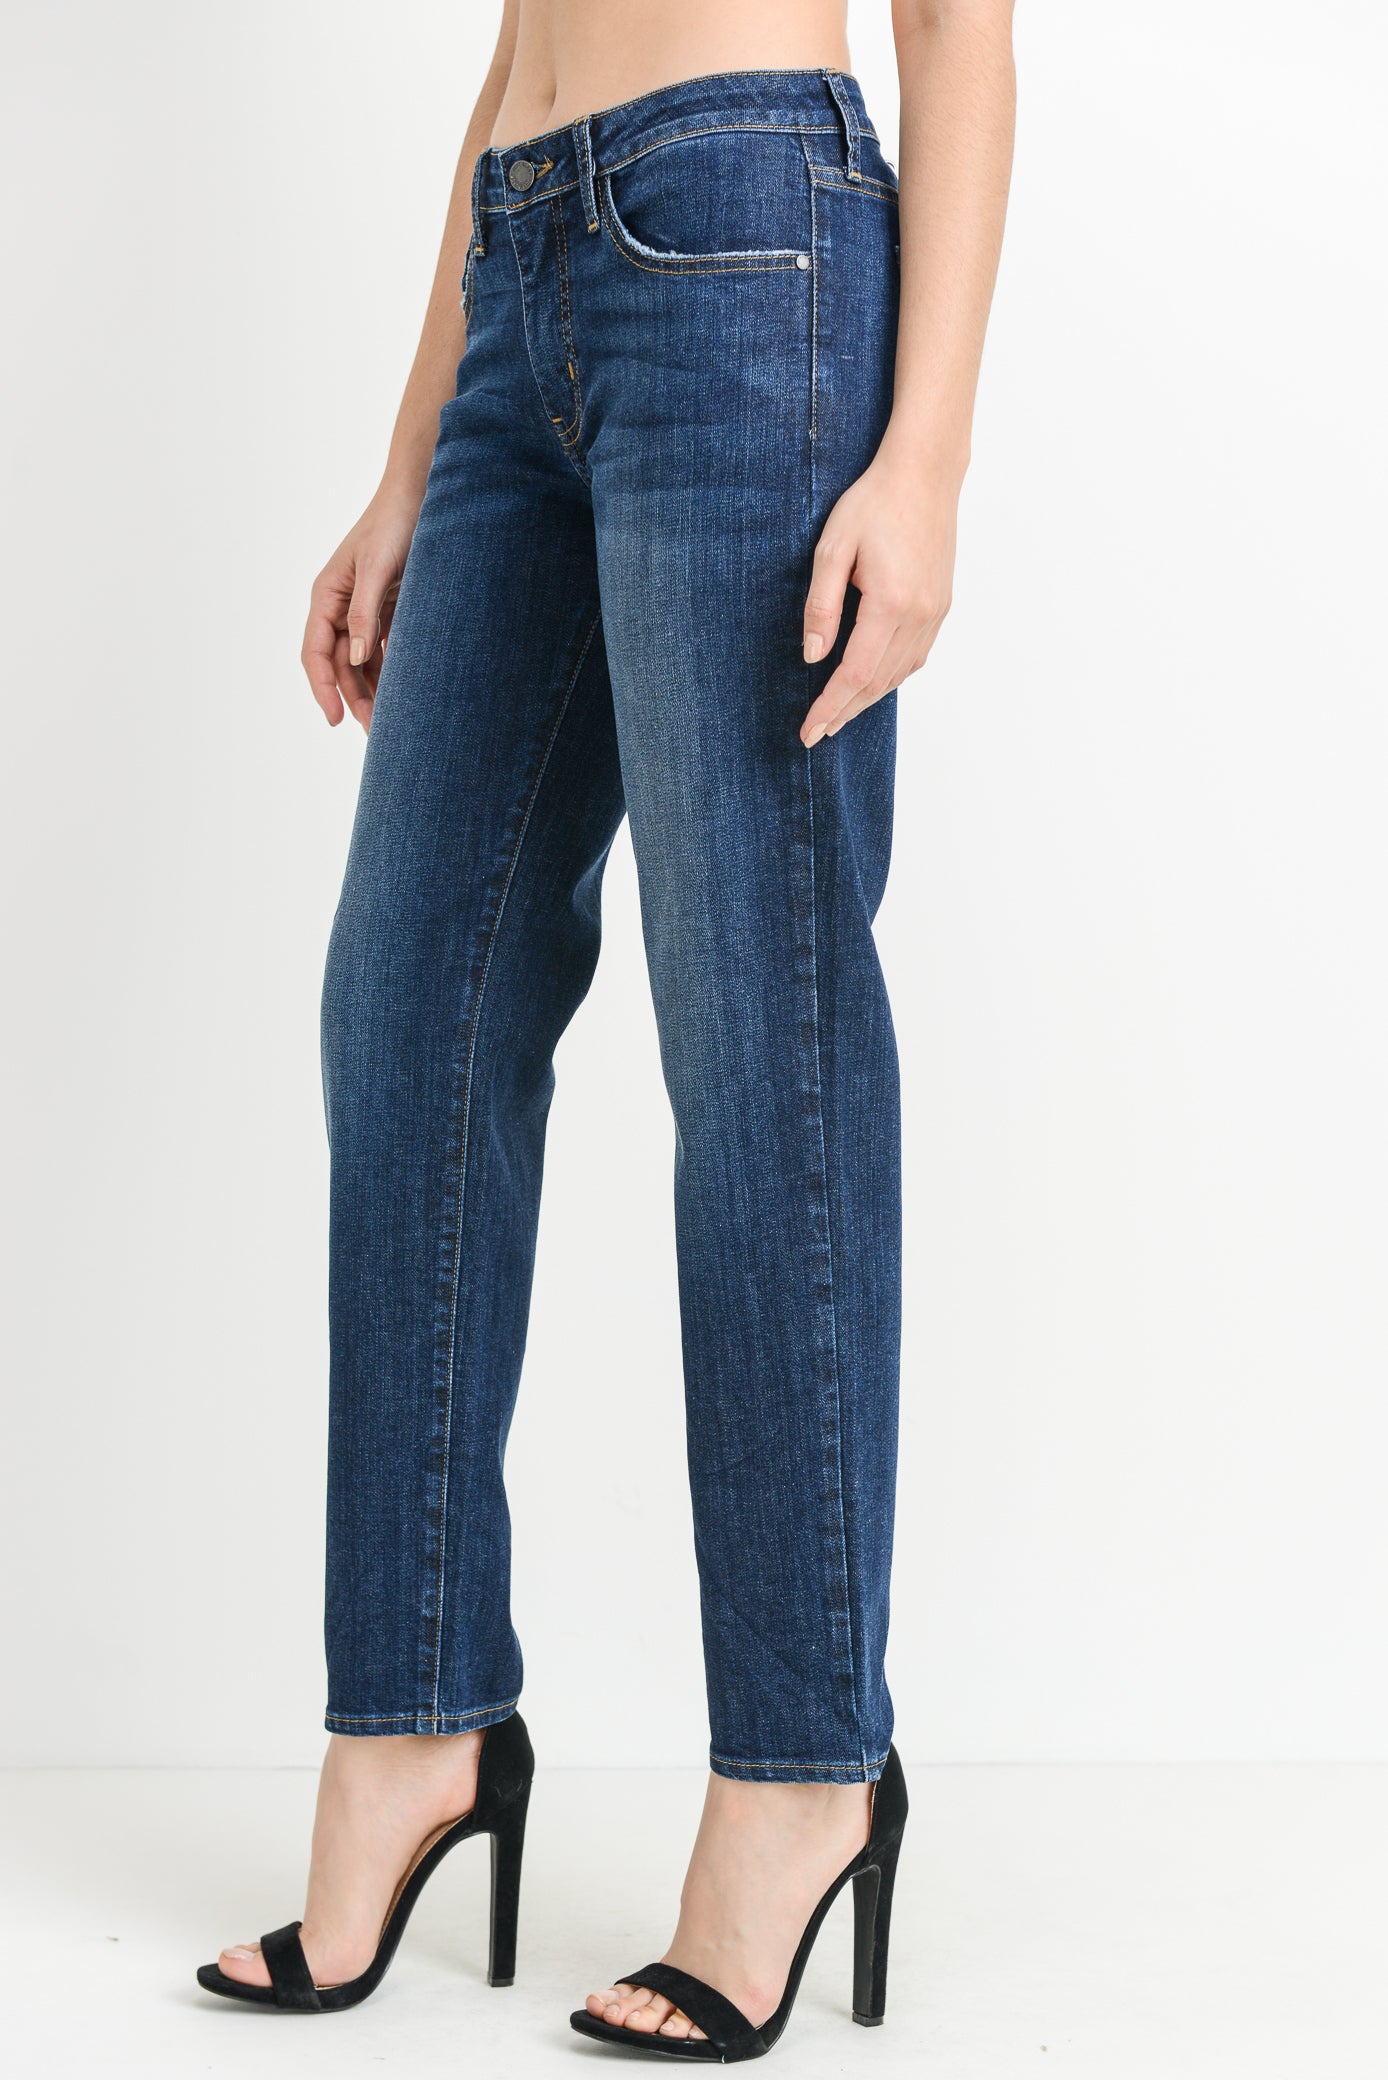 Women's Slim Boyfit Jeans for Core Wardrobe at MARIA VINCENT Boutique ...